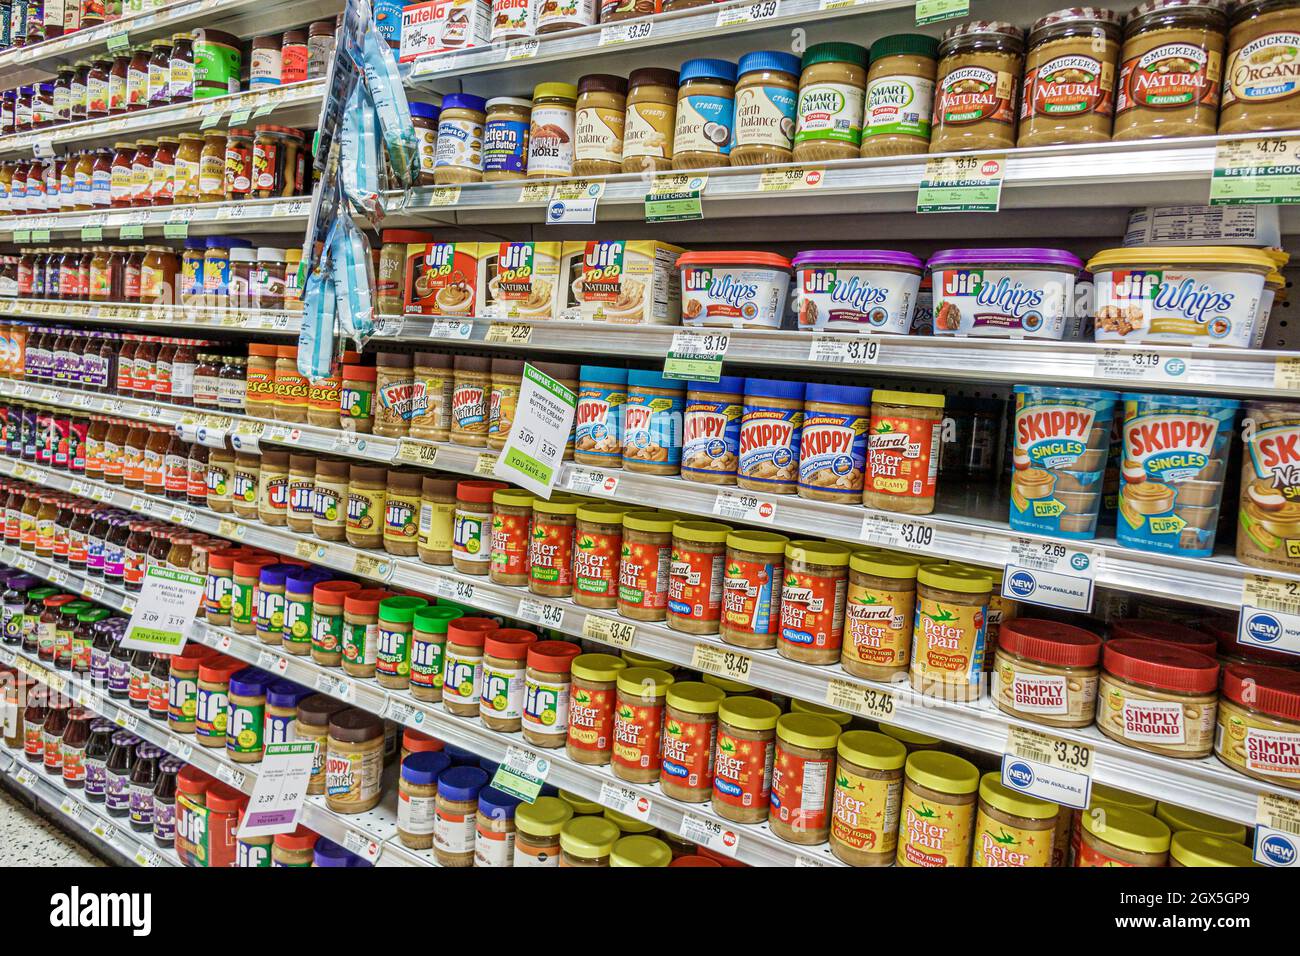 Ft. Fort Lauderdale Florida, Publix, supermercato negozio di alimentari, vendita esposizione scaffali vasi burro di arachidi Skippy Peter Pan, marche concorrenti Foto Stock